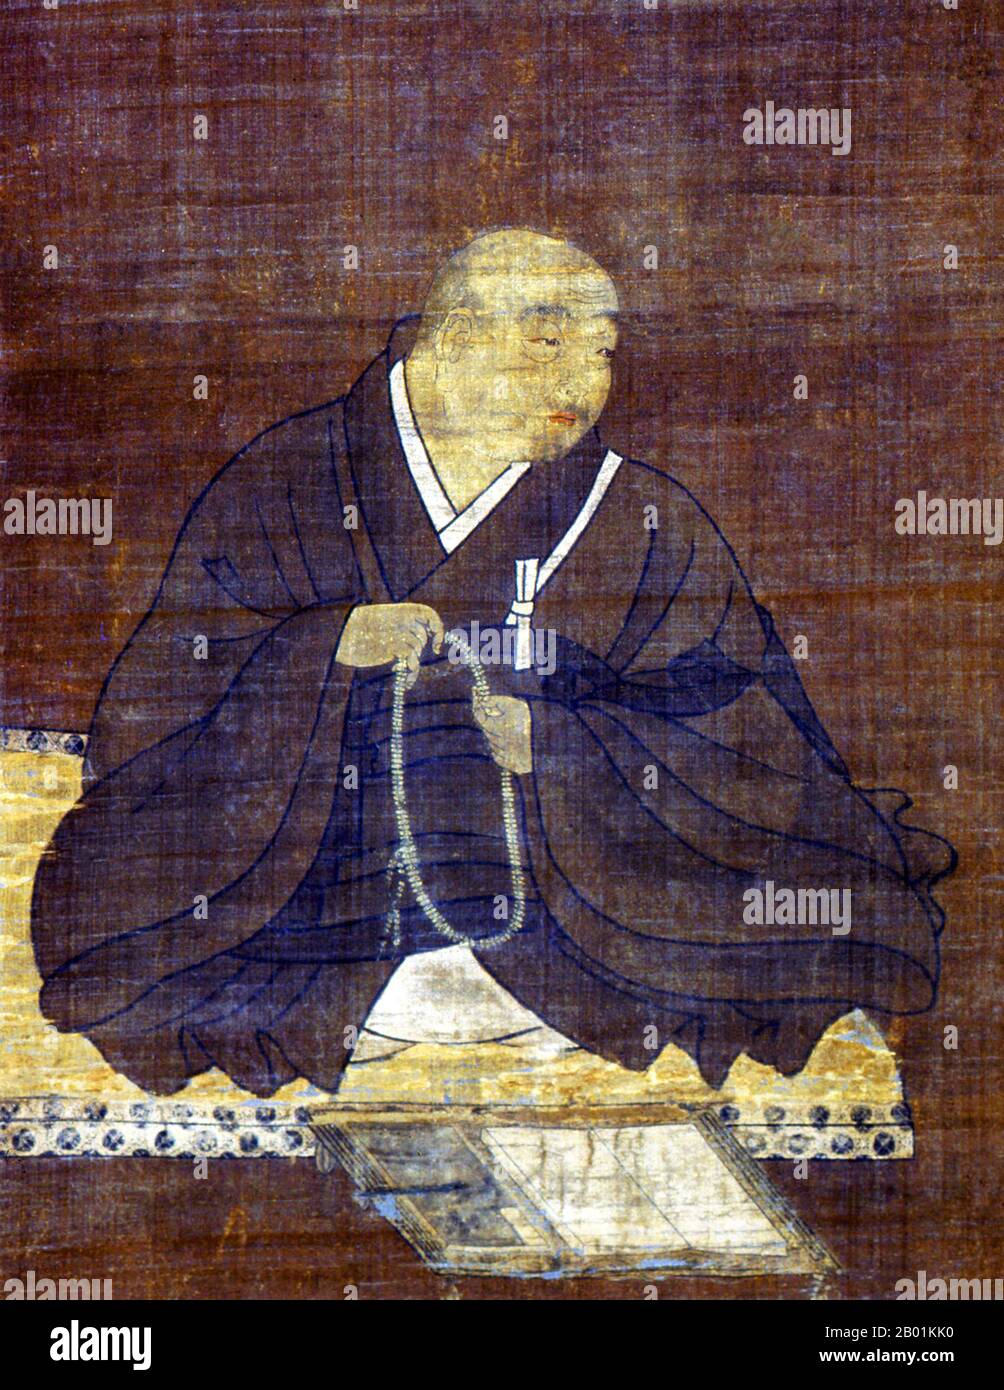 Japan: Der buddhistische Mönch Honen (13. Mai 1133 bis 29. Februar 1212). Hängendes Rollbild von Fujiwara Takanobu (1142-1205), 12. Jahrhundert. Hōnen war der religiöse Reformator und Gründer des ersten unabhängigen Zweig des japanischen reinen Land-Buddhismus namens Jōdo shū („die reine Land-Schule“). In der verwandten Jōdo Shinshū-Sekte gilt er als Siebter Patriarch. Hōnen wurde schon früh Mönch der Tendai-Sekte, wurde jedoch unbeeindruckt und suchte einen Ansatz für den Buddhismus, dem jeder folgen konnte, selbst während des wahrgenommenen Dharma-Niedergangs. Stockfoto